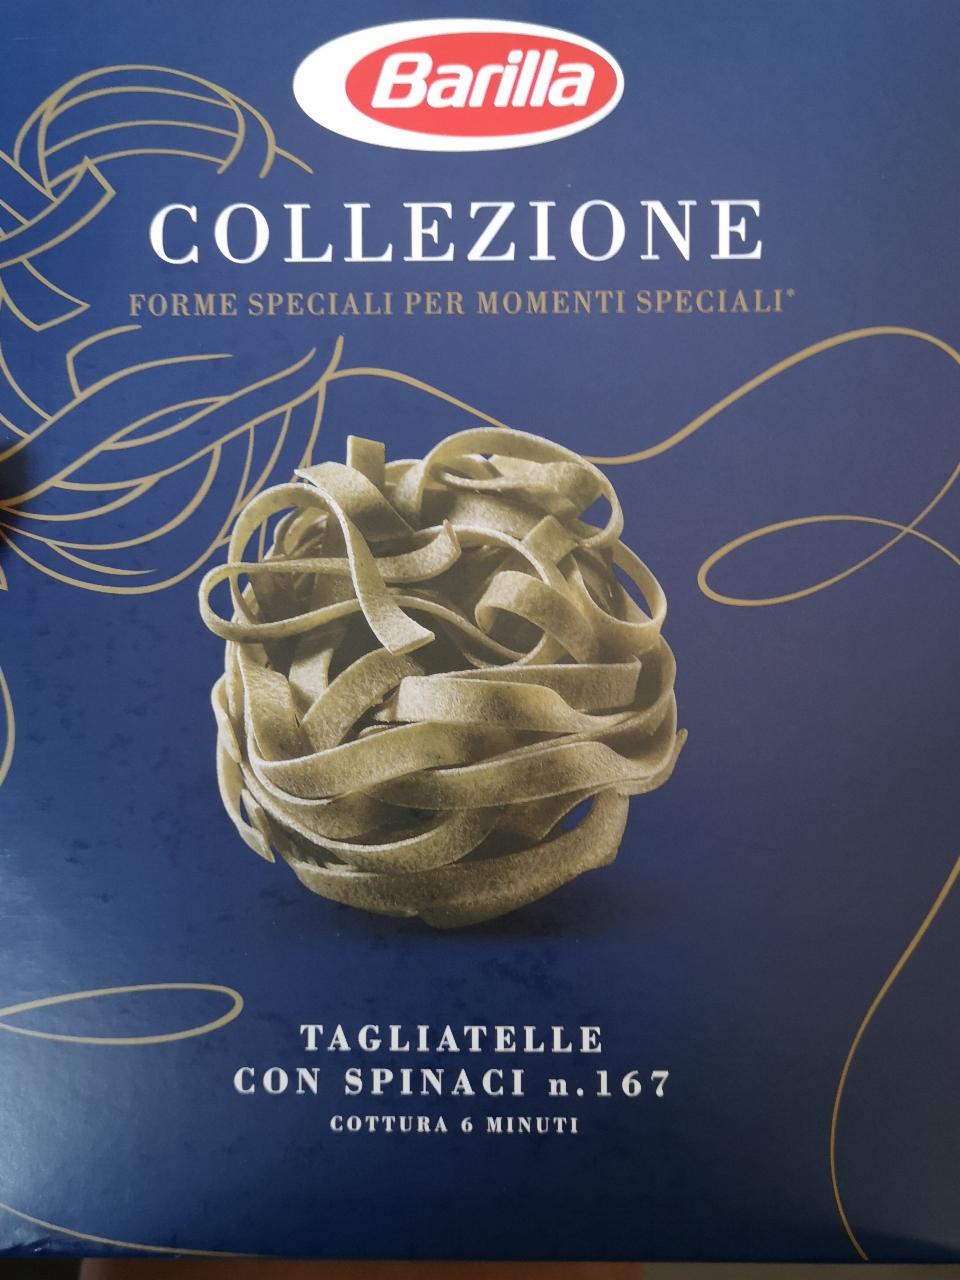 Zdjęcia - Collezione tagliatelle con spinaci n. 167 Barilla